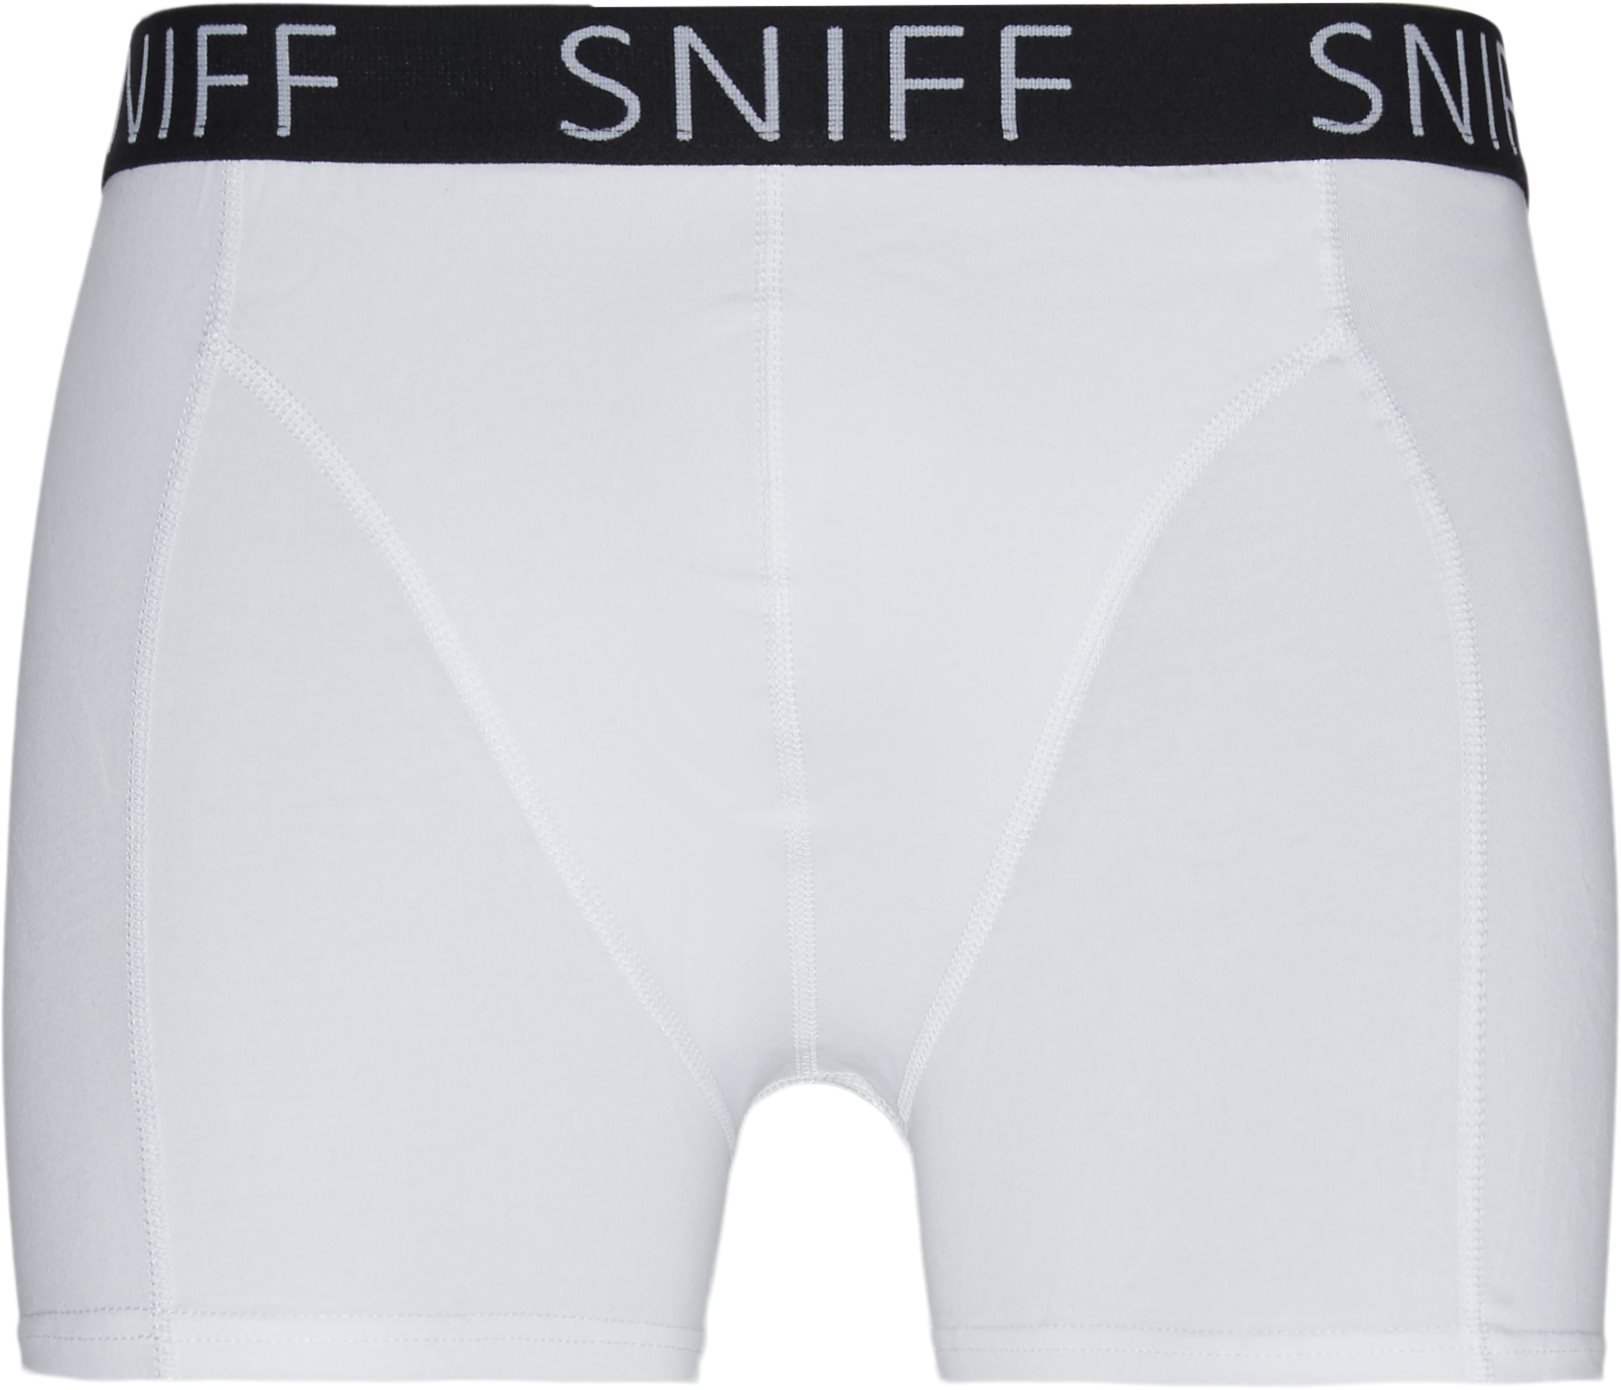 Sniff Underwear TIGHTS 88010 White